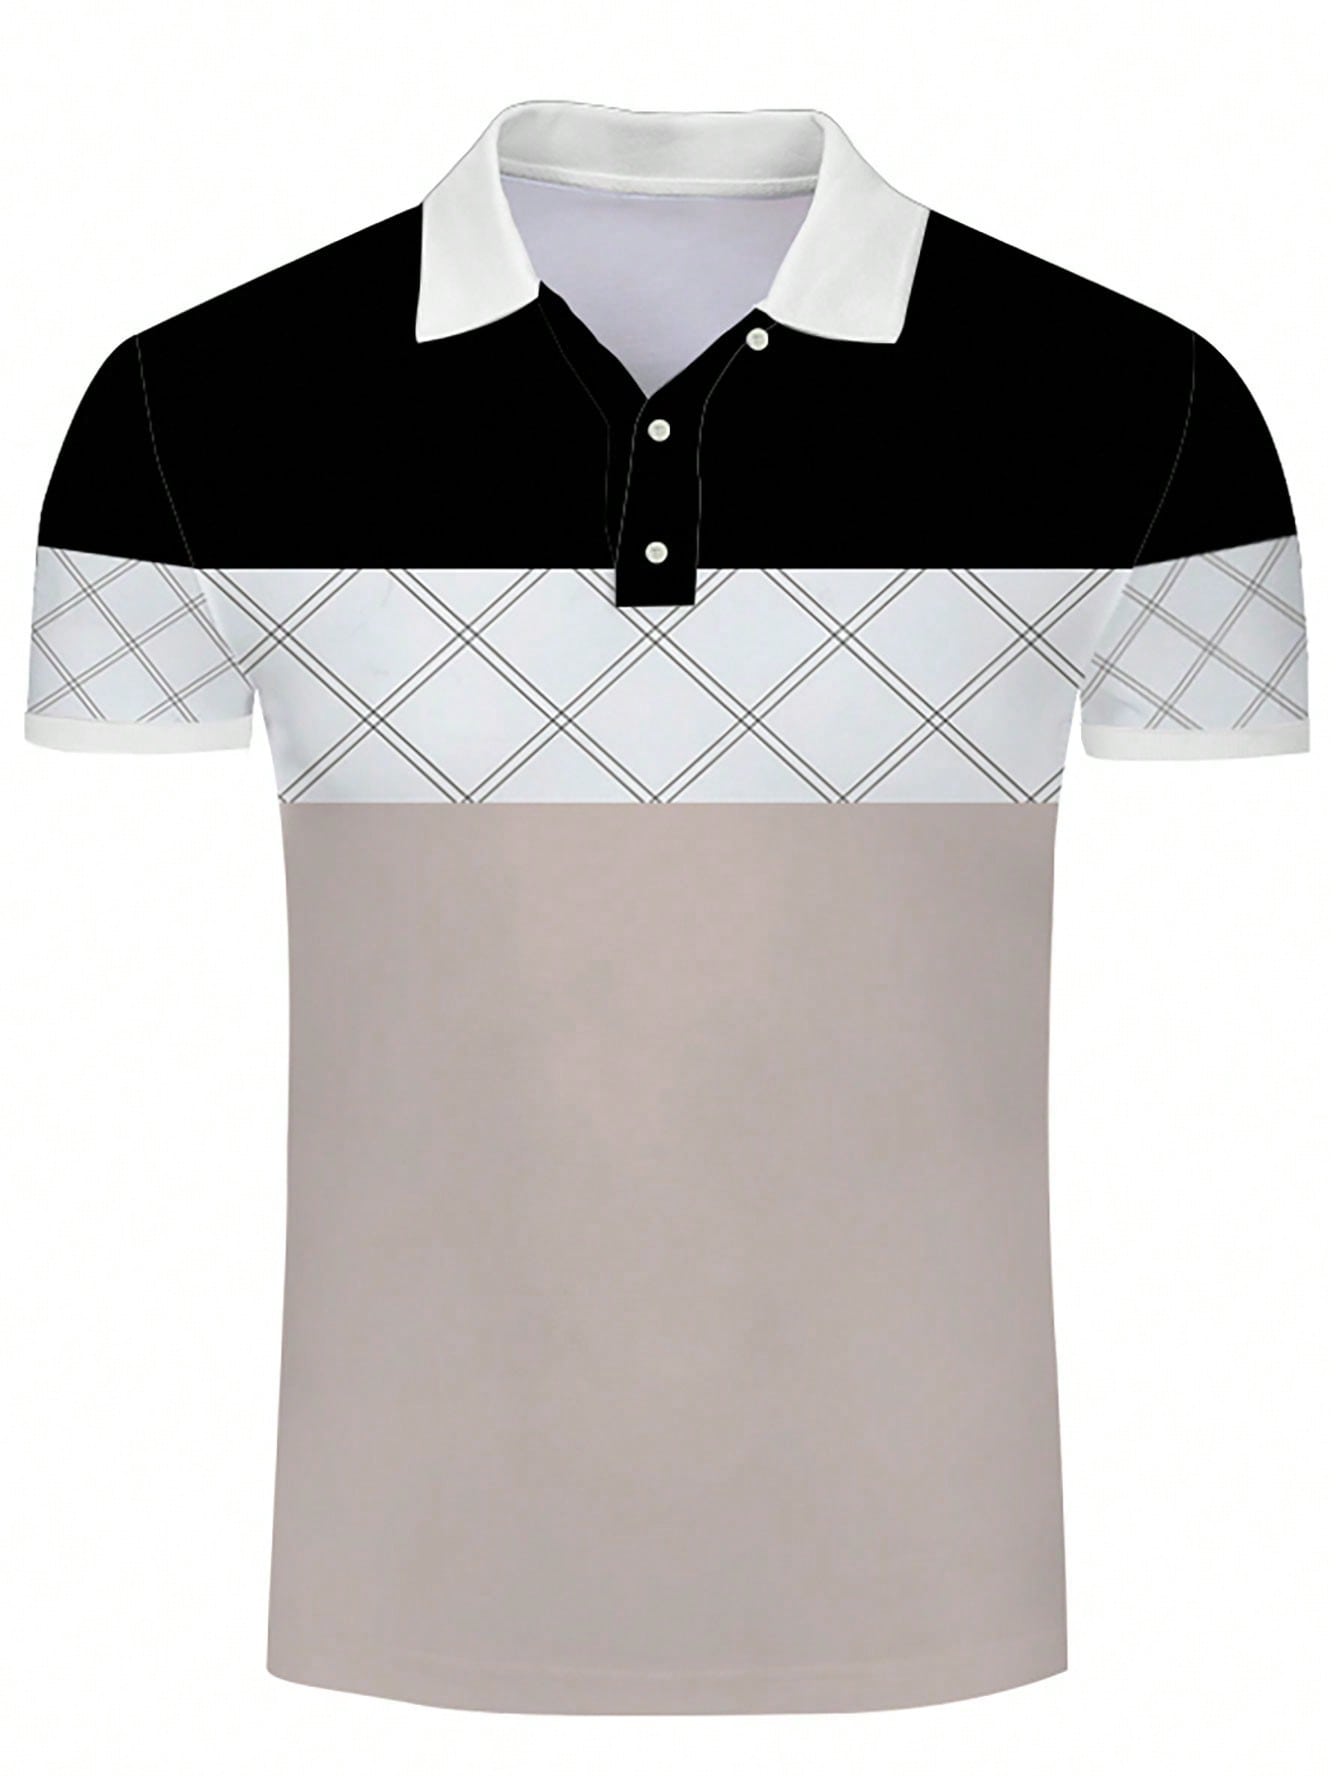 Новая спортивная рубашка поло с лацканами для гольфа, черное и белое